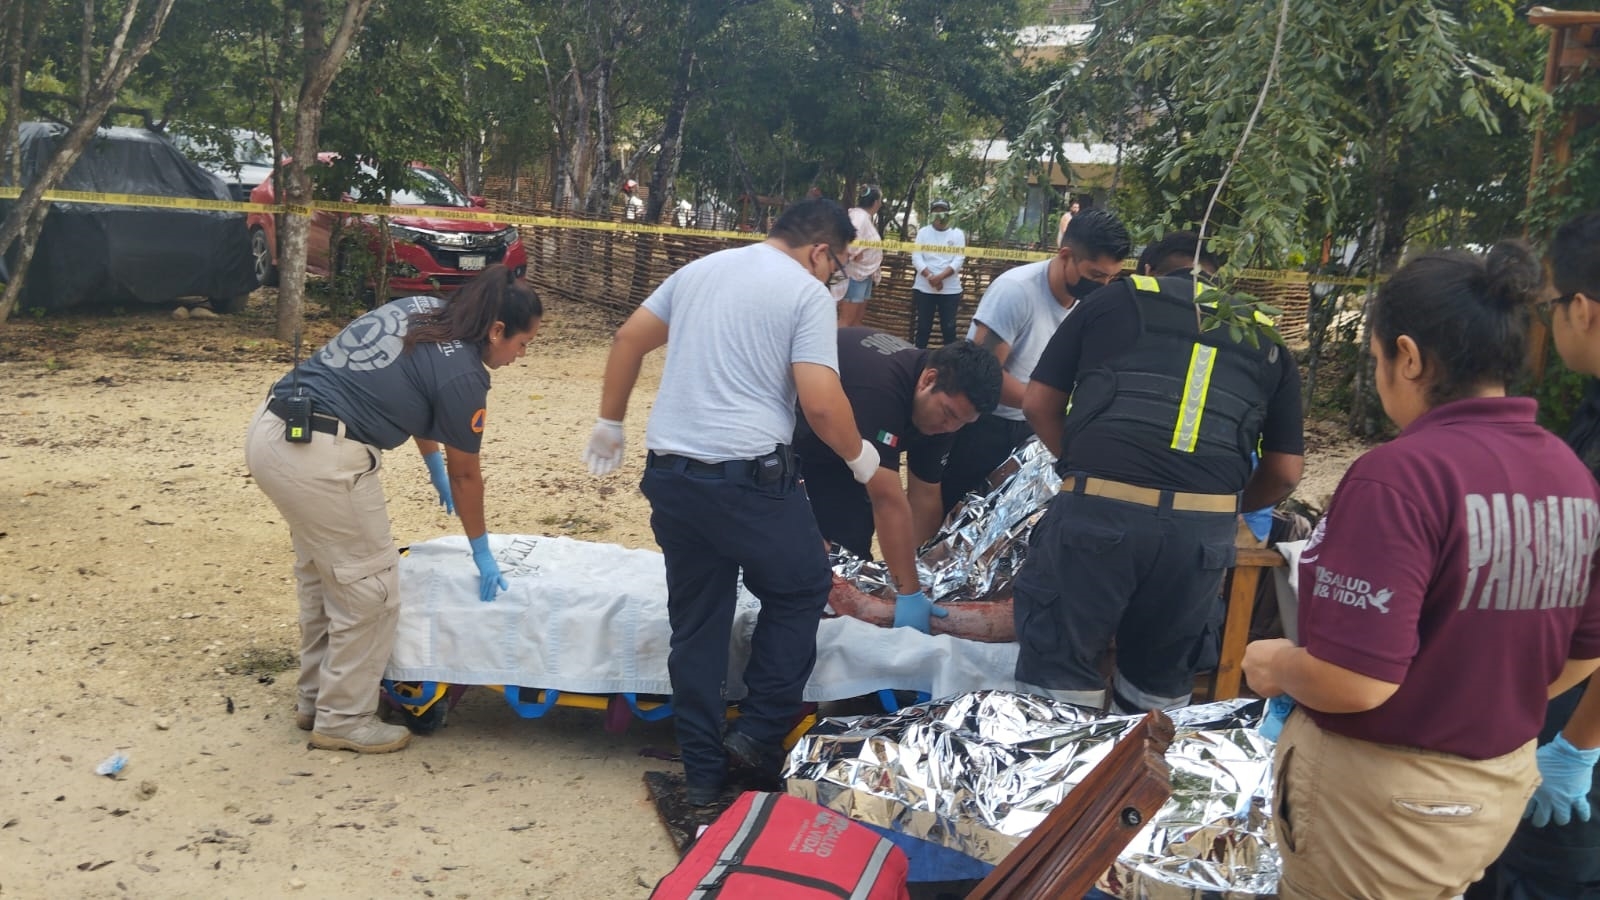 Los lesionados, trabajadores, fueron trasladados al Hospital de Playa del Carmen, ante la falta de nosocomio en Tulum, pues no se ha podido equipar uno.